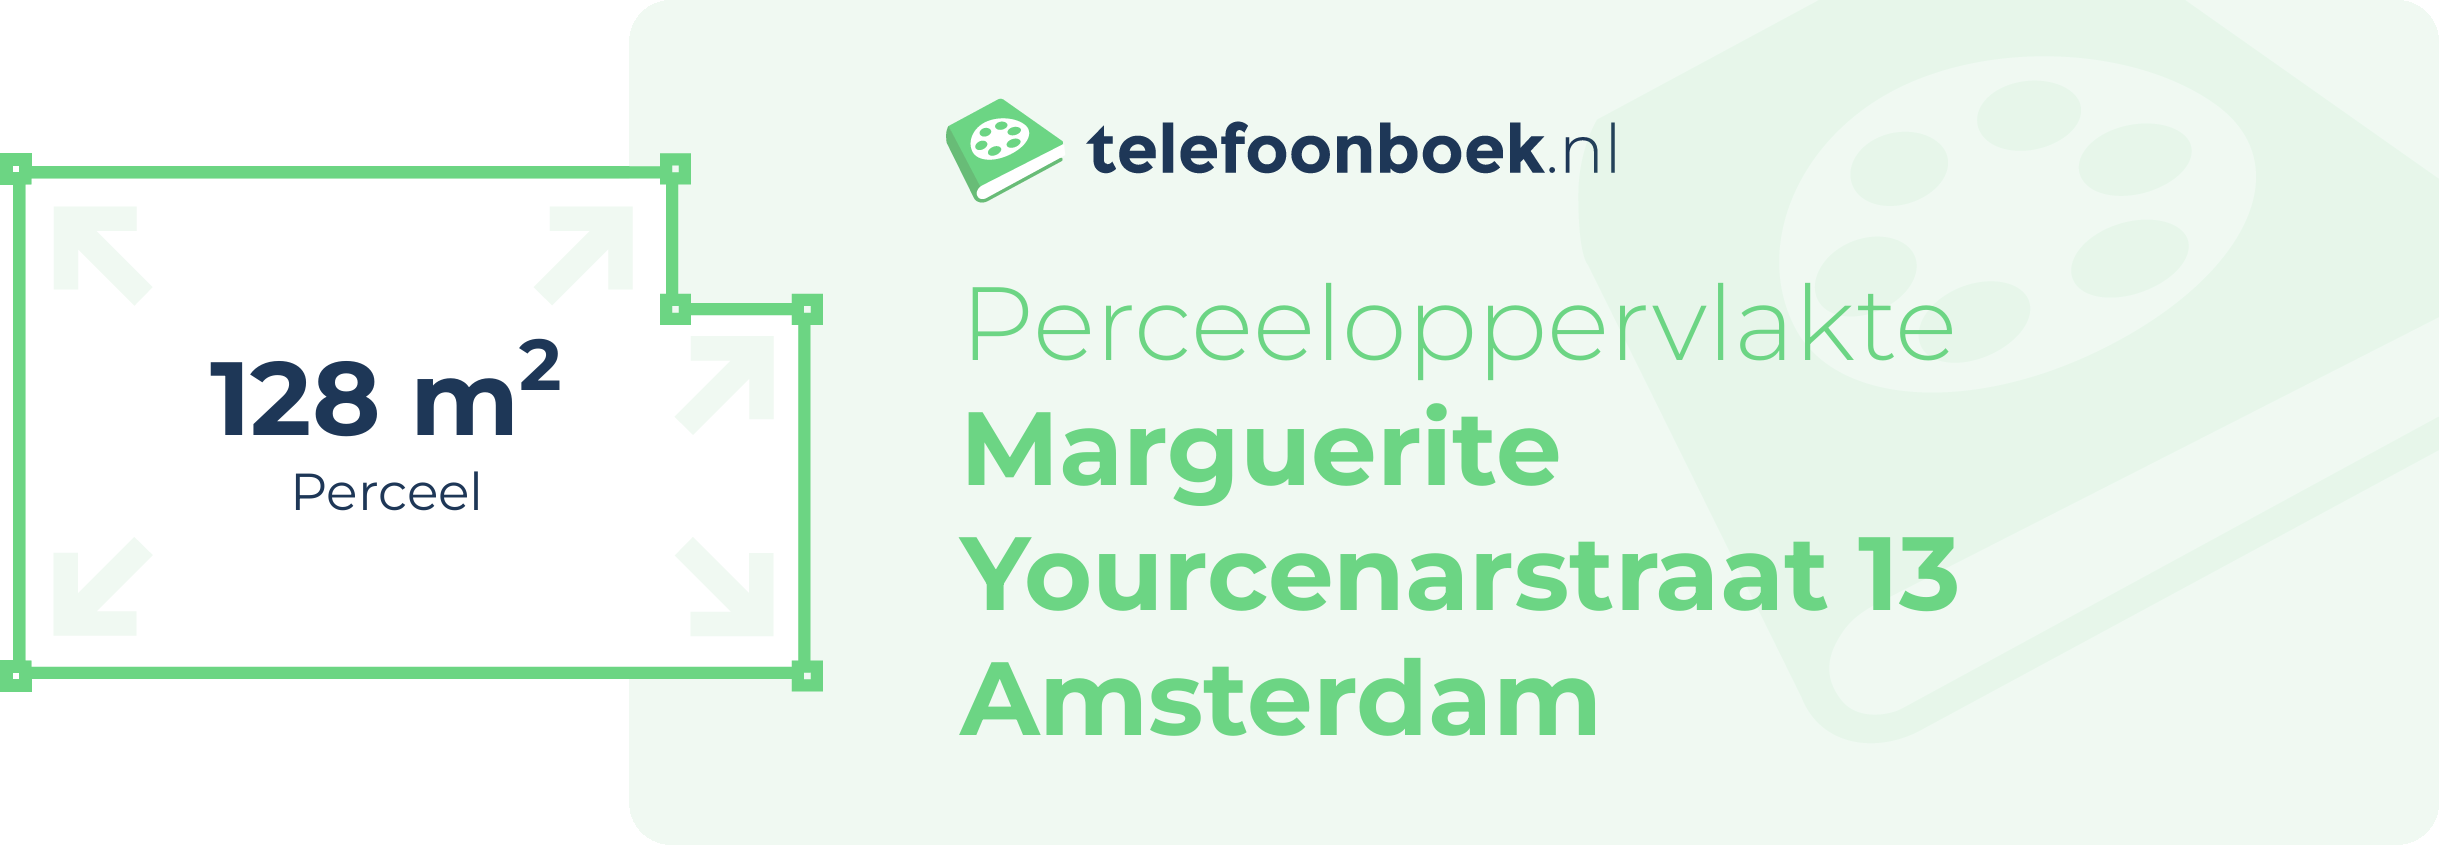 Perceeloppervlakte Marguerite Yourcenarstraat 13 Amsterdam